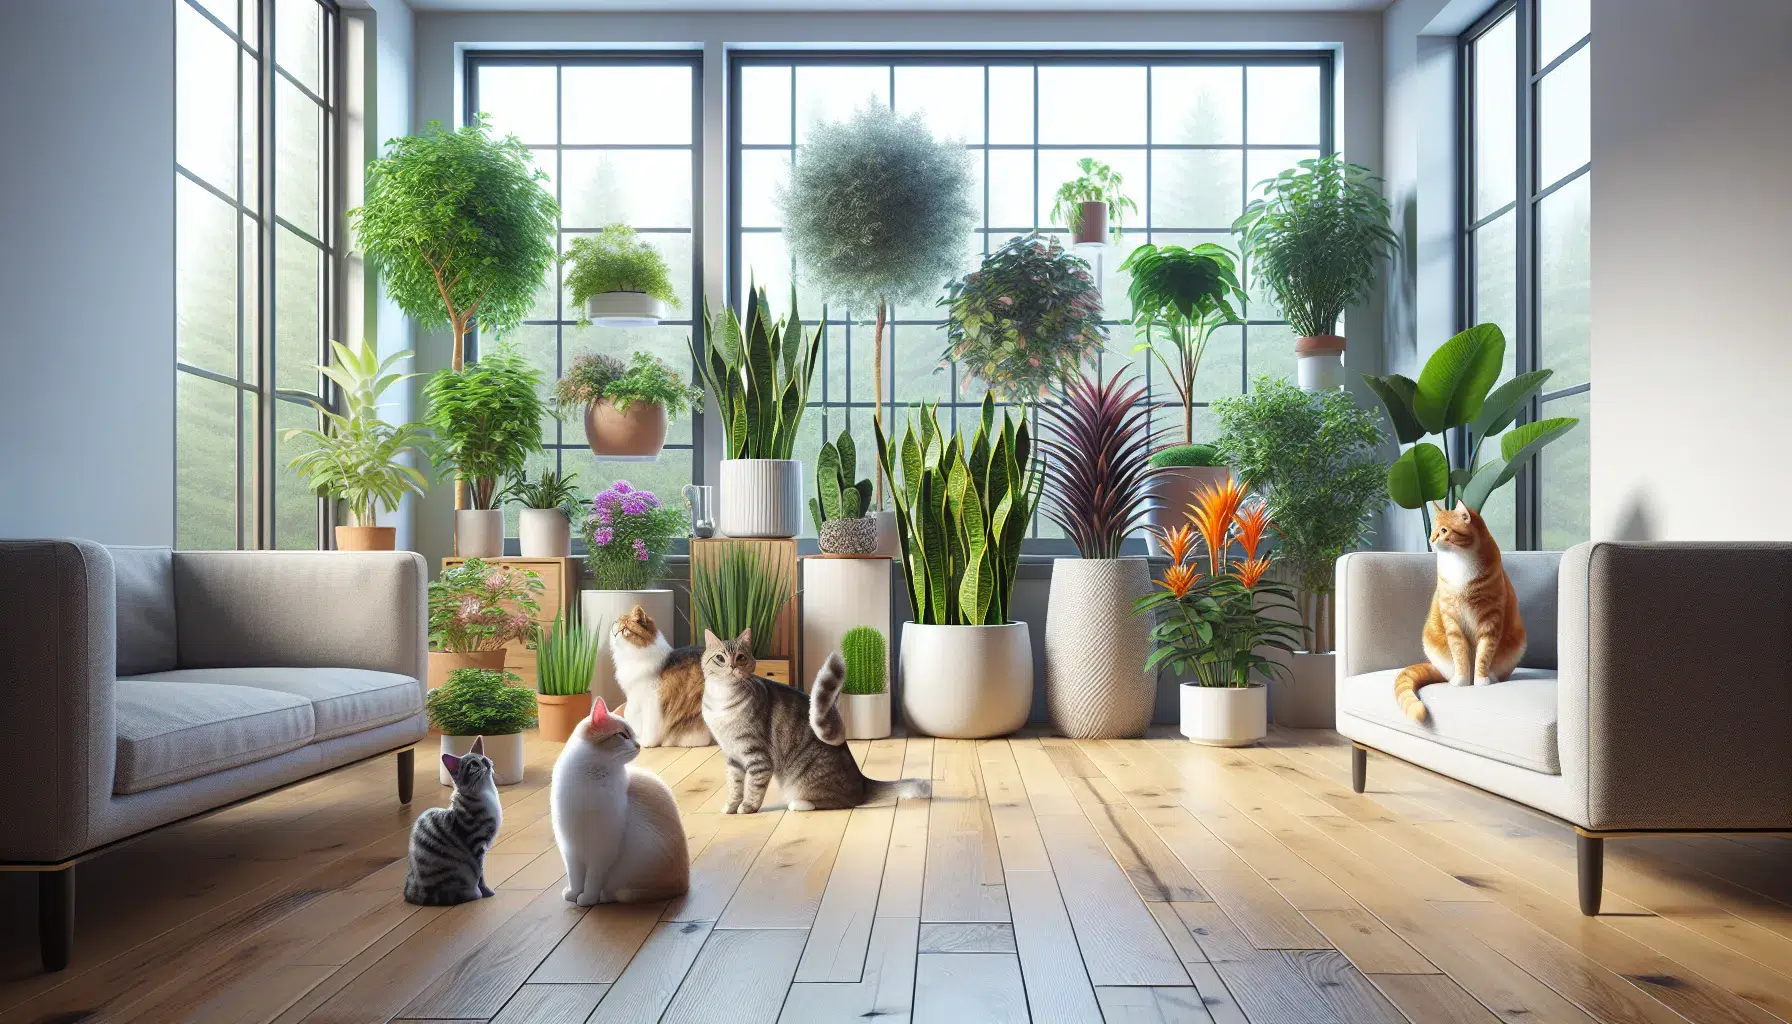 Imagen de varias plantas seguras para gatos, ideales para tener en casa sin riesgo para las mascotas.